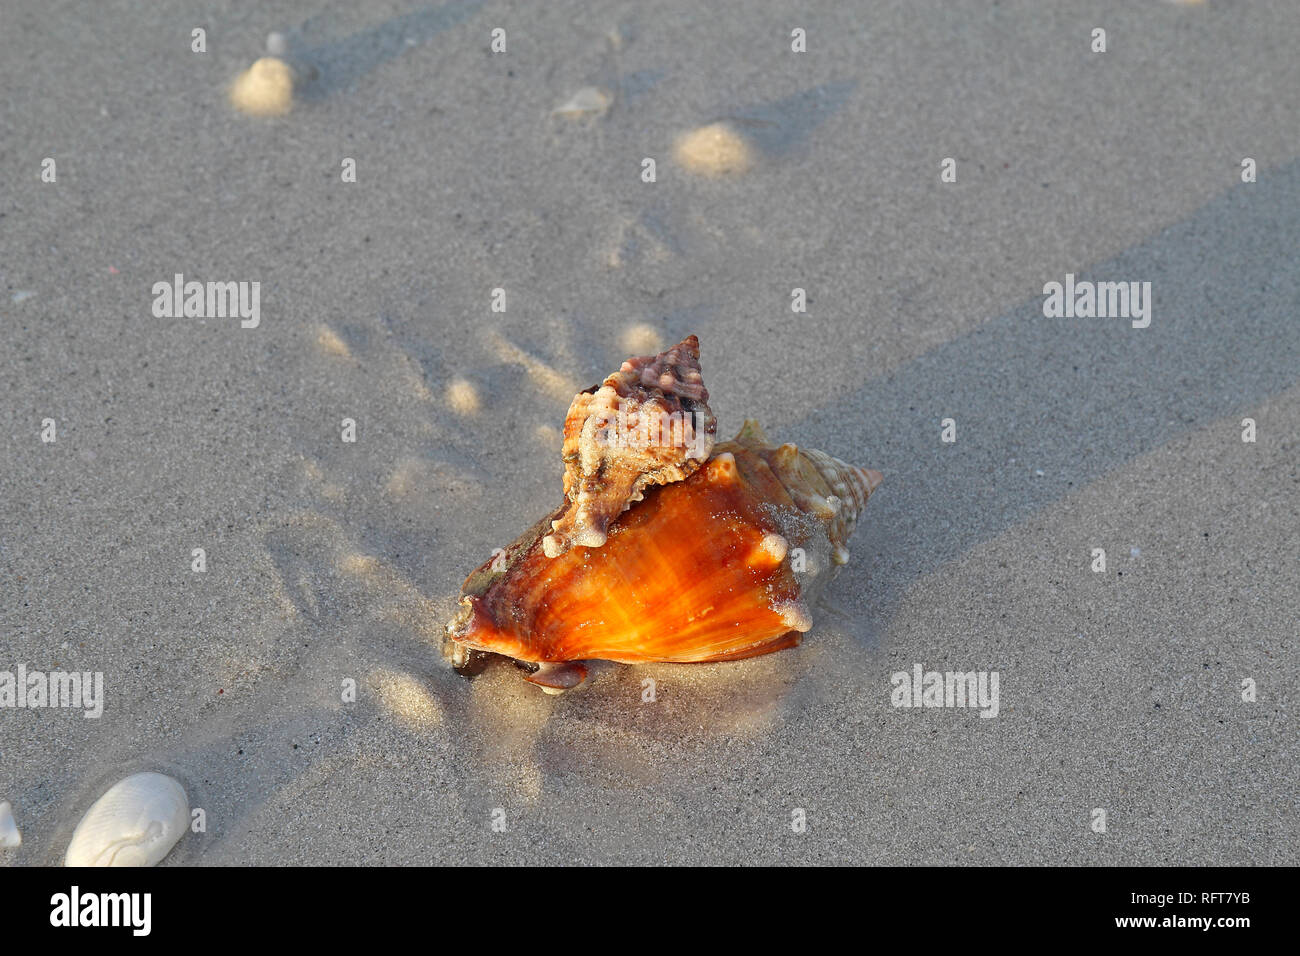 Räuberische apple murex Schnecke (Phyllonotus pomum) angreifen und Essen ein Florida fighting Conch (Strombus Alatus) Lighthouse Beach auf Sanibel Island Stockfoto